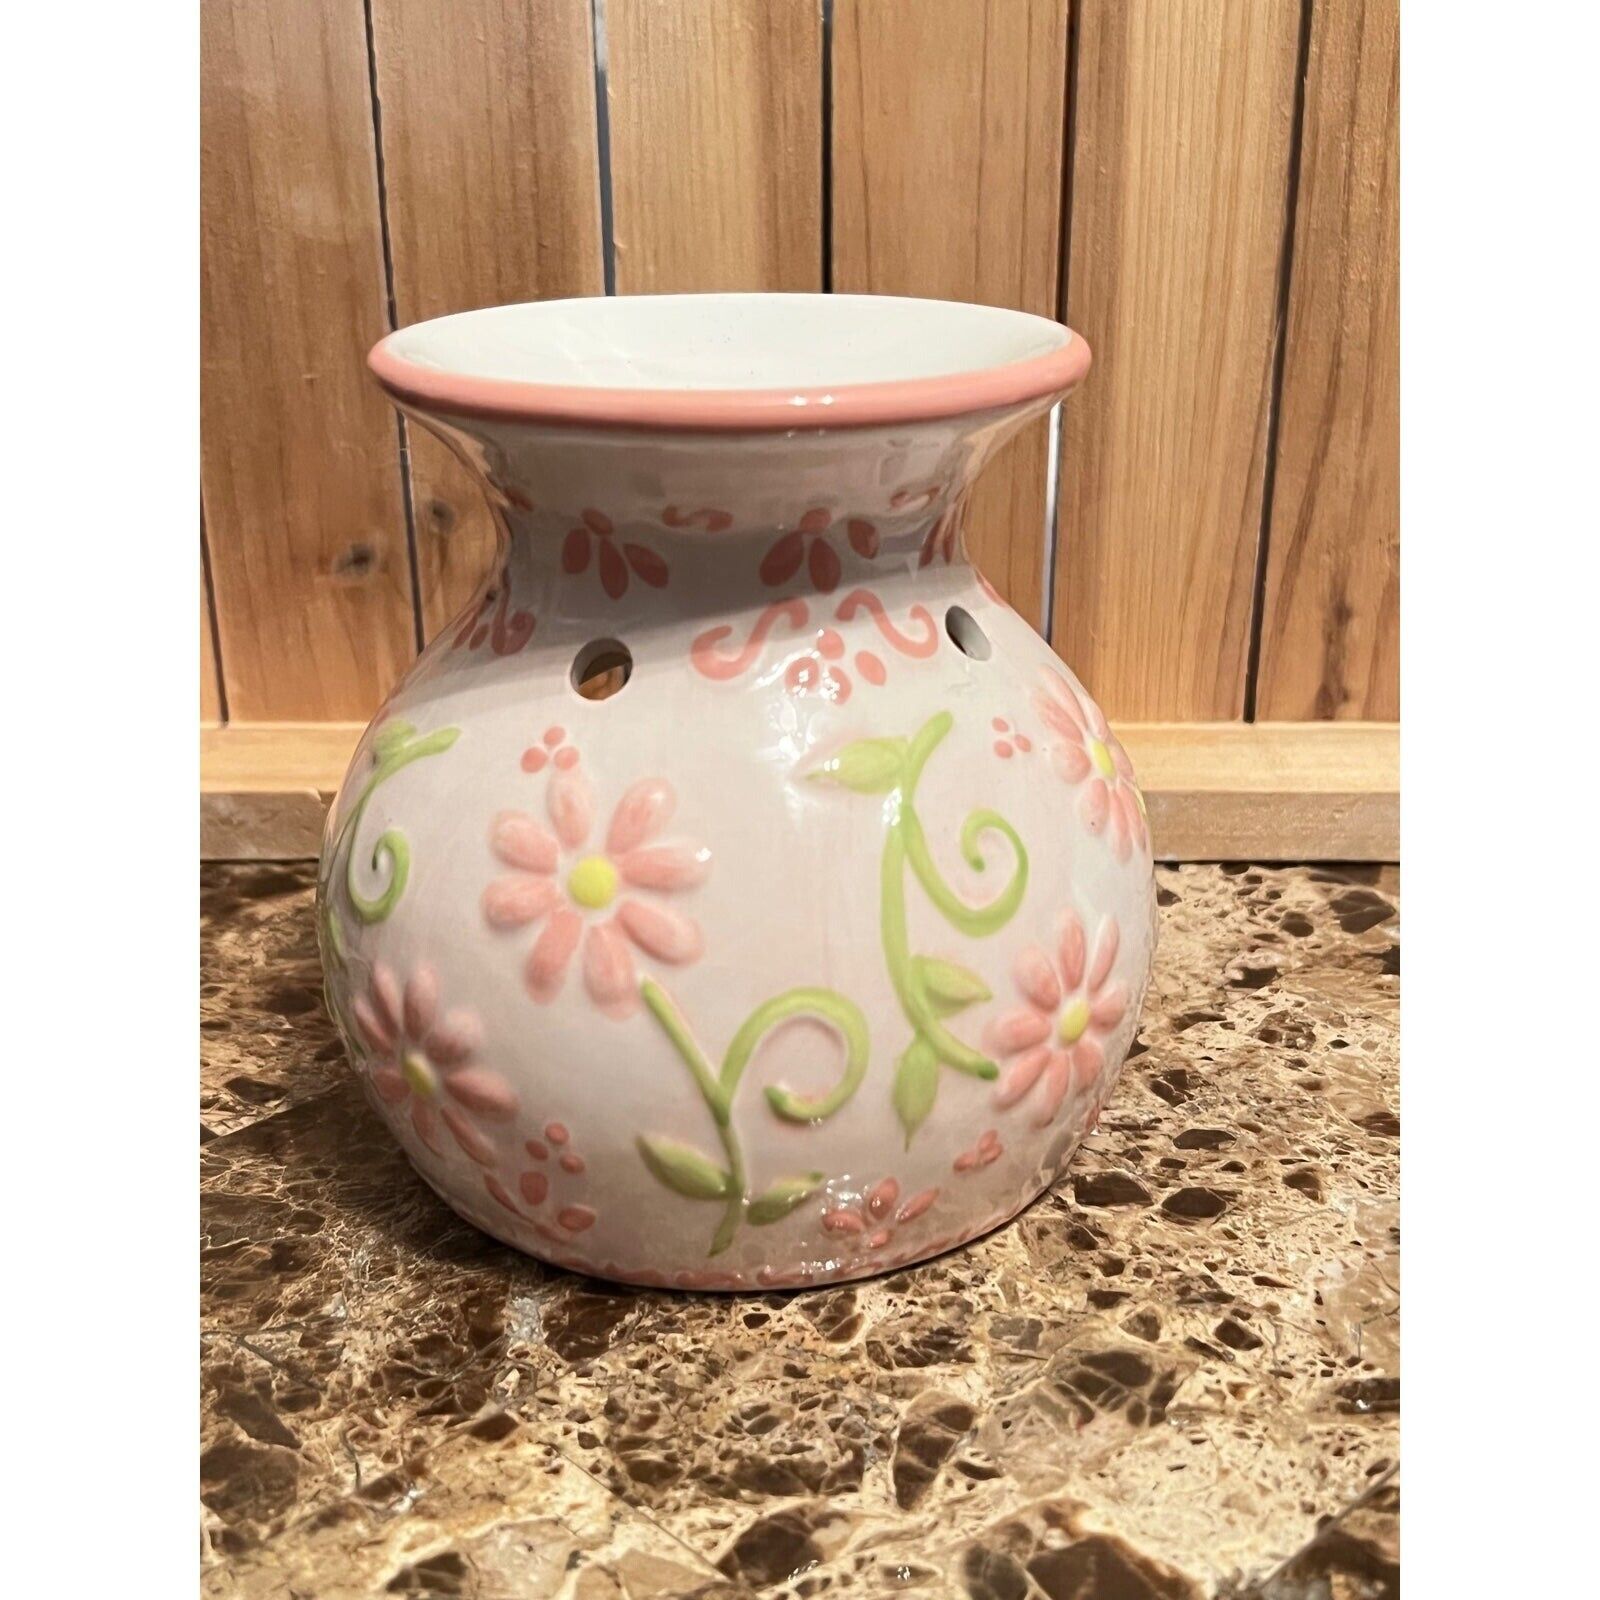 Ganz Floral Pattern Tea Light Oil/Tart Burner - $10.00